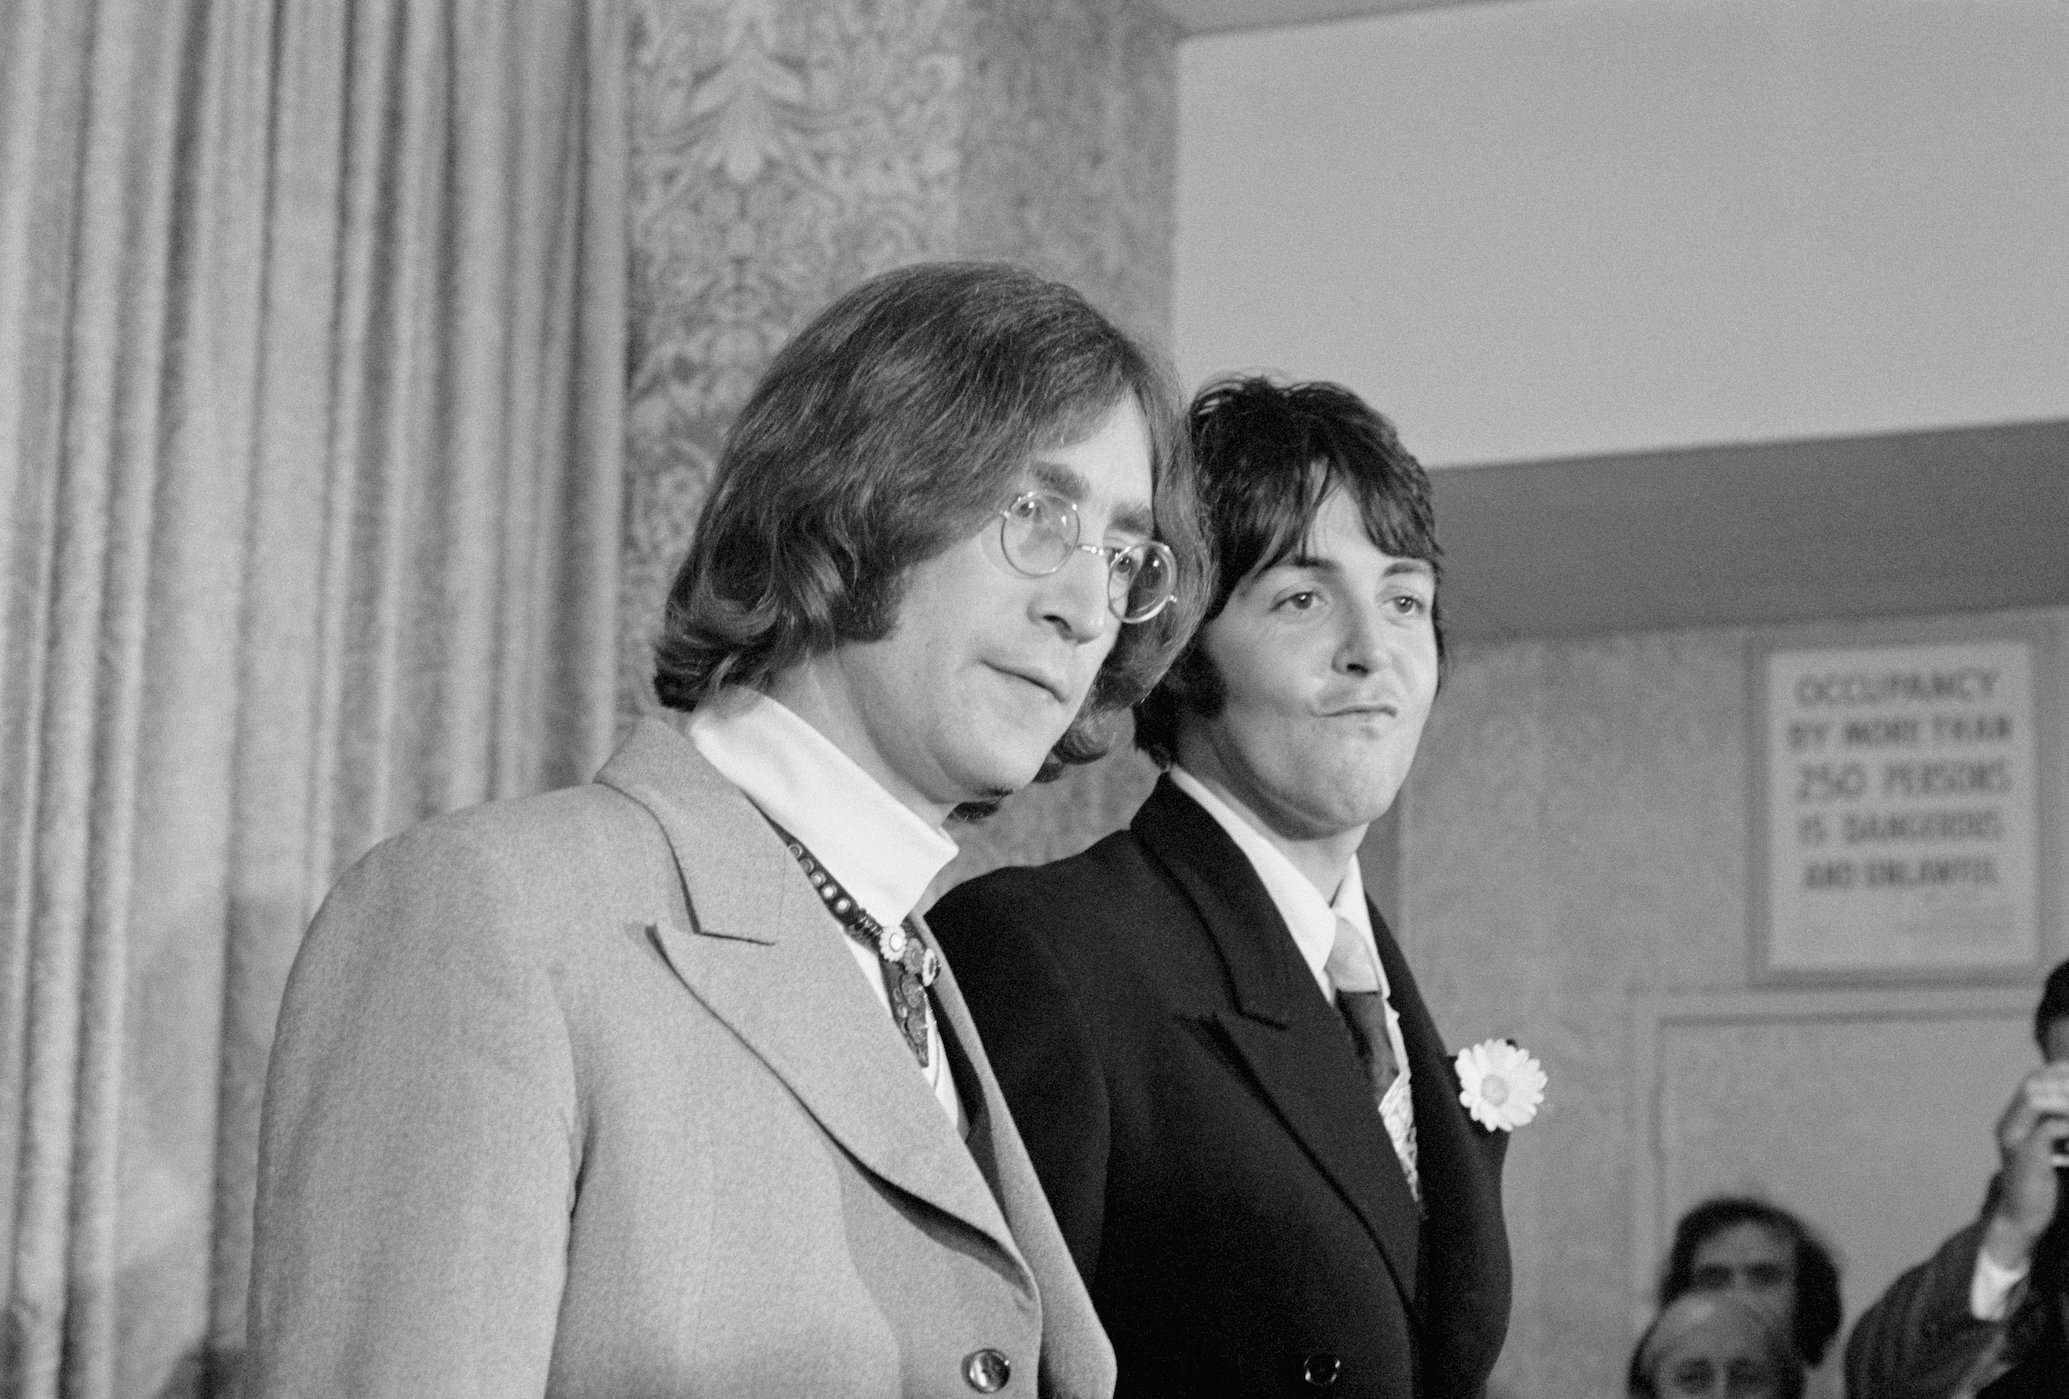 Paul McCartney đã chia sẻ điều khiến anh ấy ấn tượng nhất về John Lennon khi họ gặp nhau lần đầu